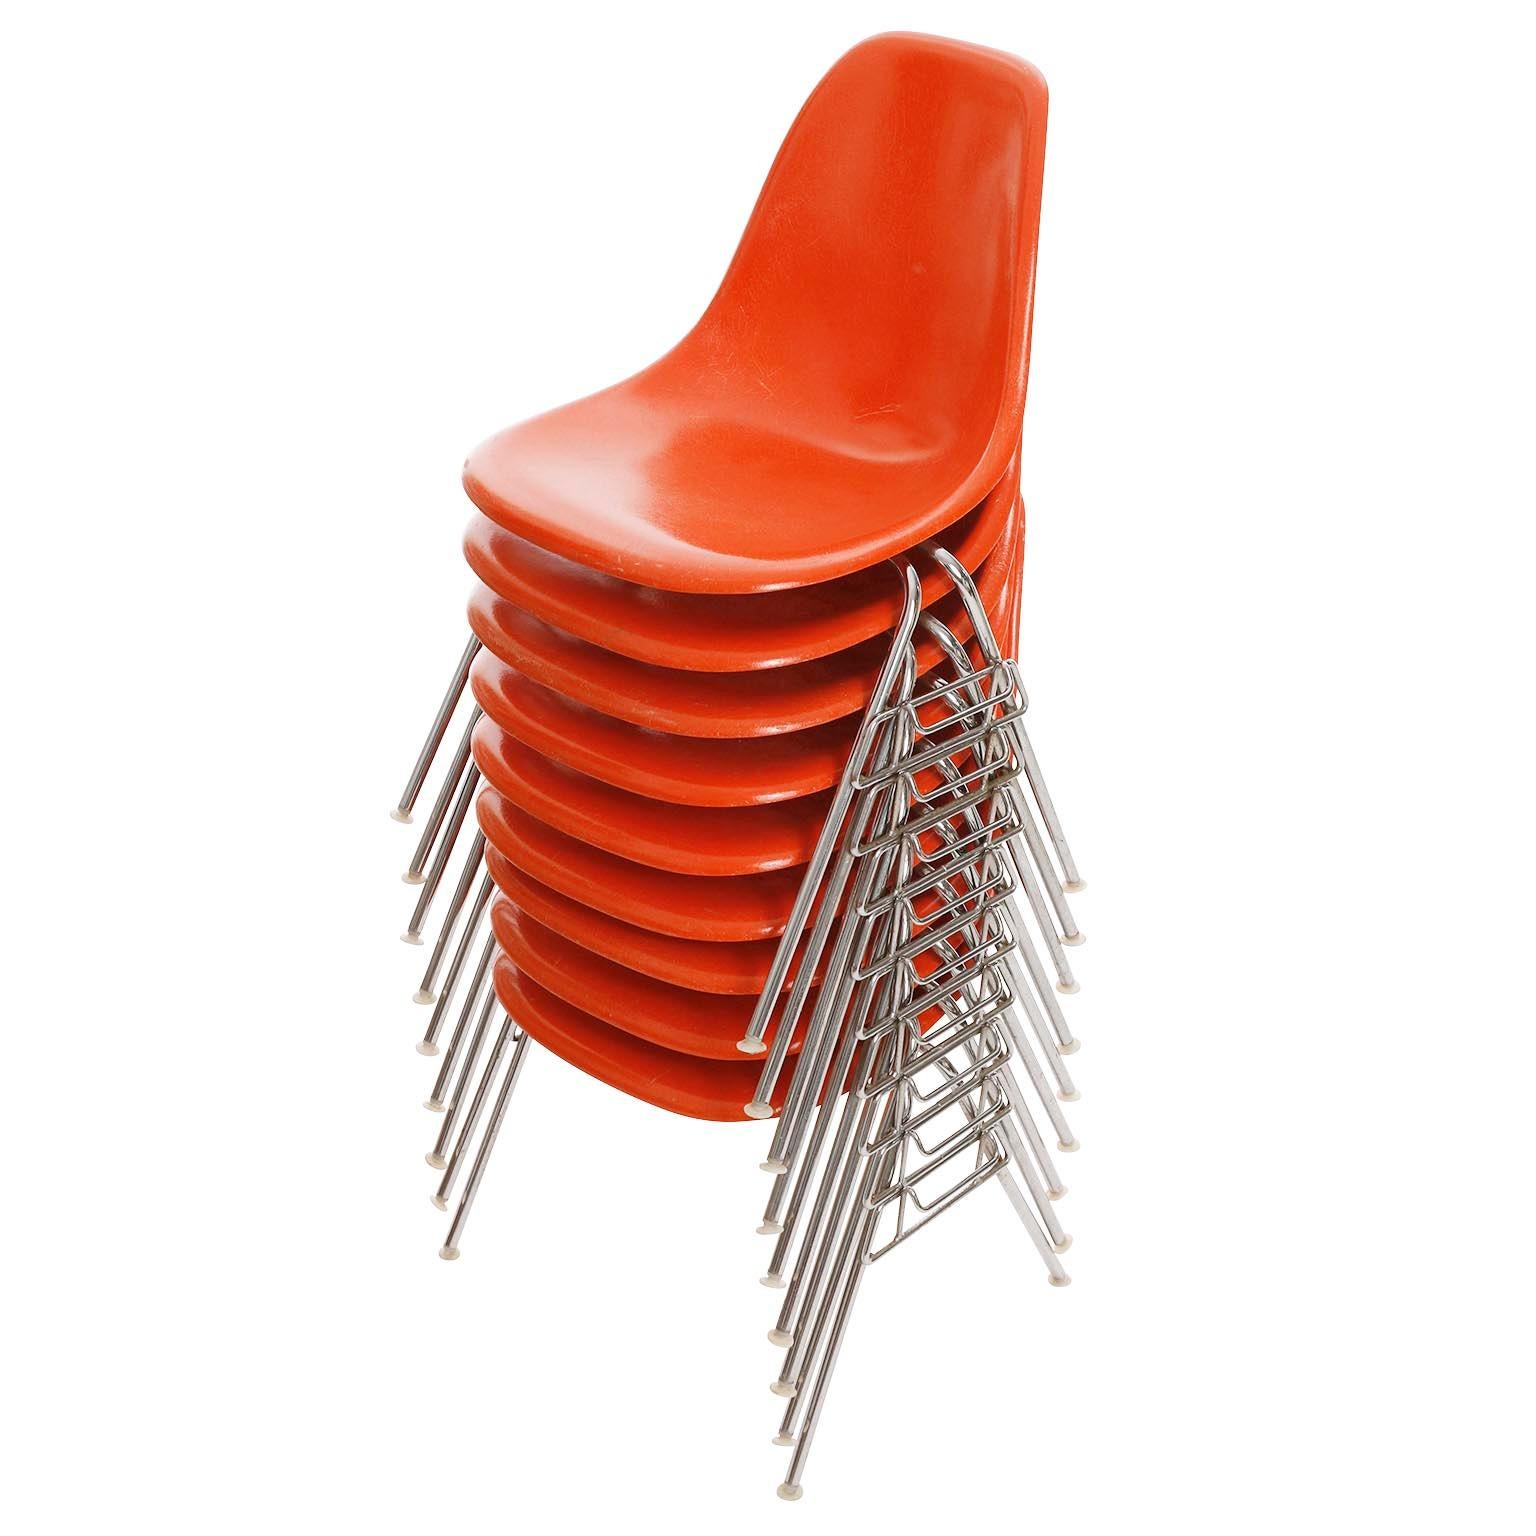 Une des 18 chaises de salle à manger empilables de Charles & Ray Eames pour Herman Miller, fabriquées au milieu du siècle, vers 1970 (fin des années 1960 ou début des années 1970).
Les chaises portent la mention 